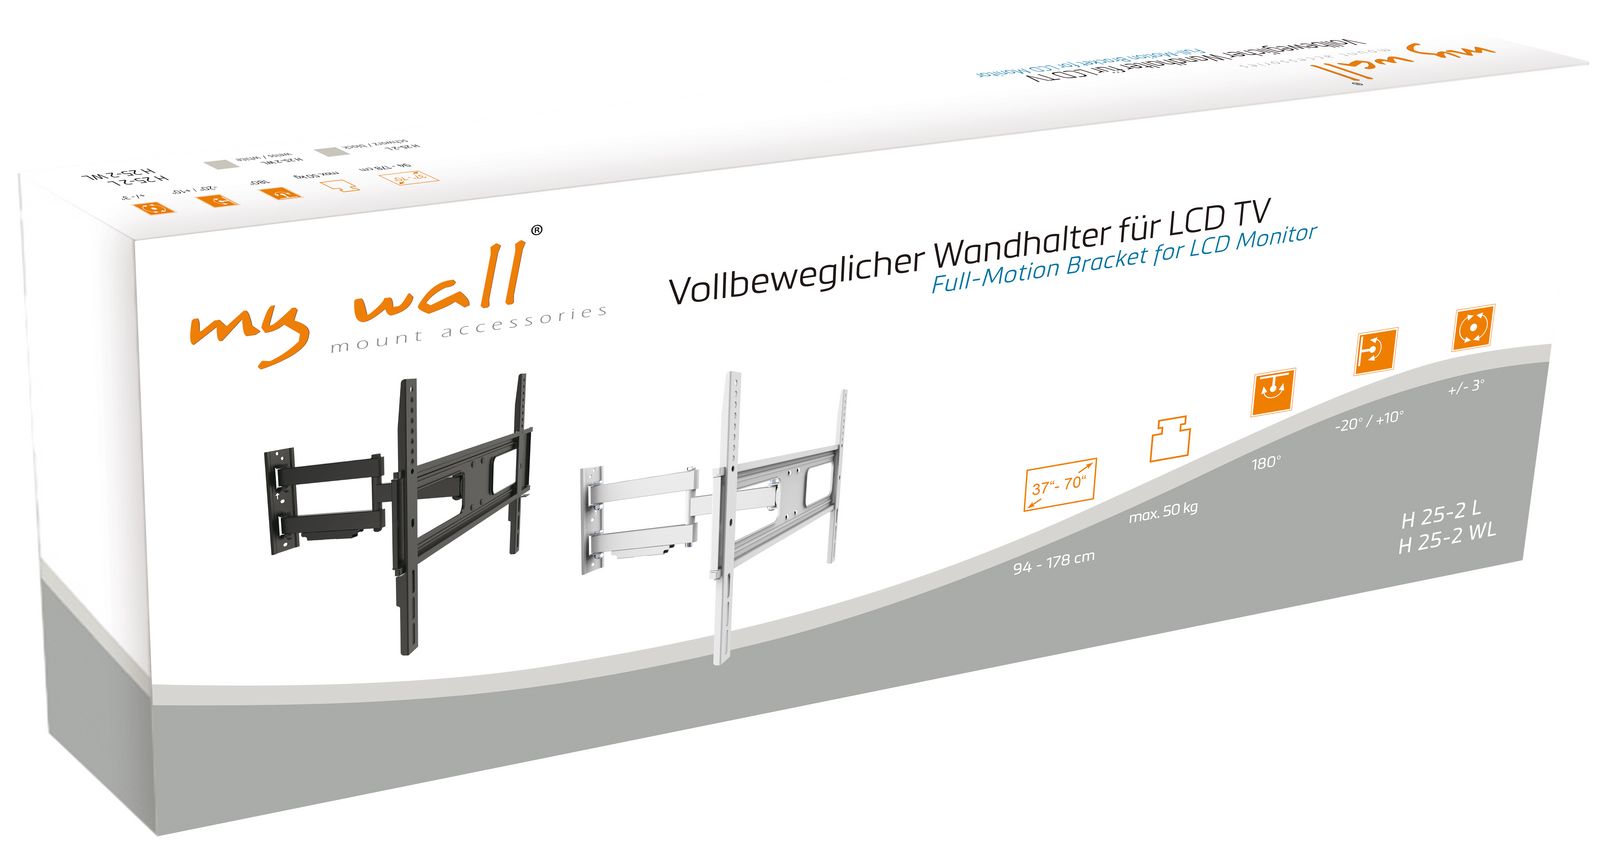 Vollbeweglicher Wandhalter für LCD TV My Wall H25-2W-/bilder/big/h25-2_h25-2w_karton.jpg